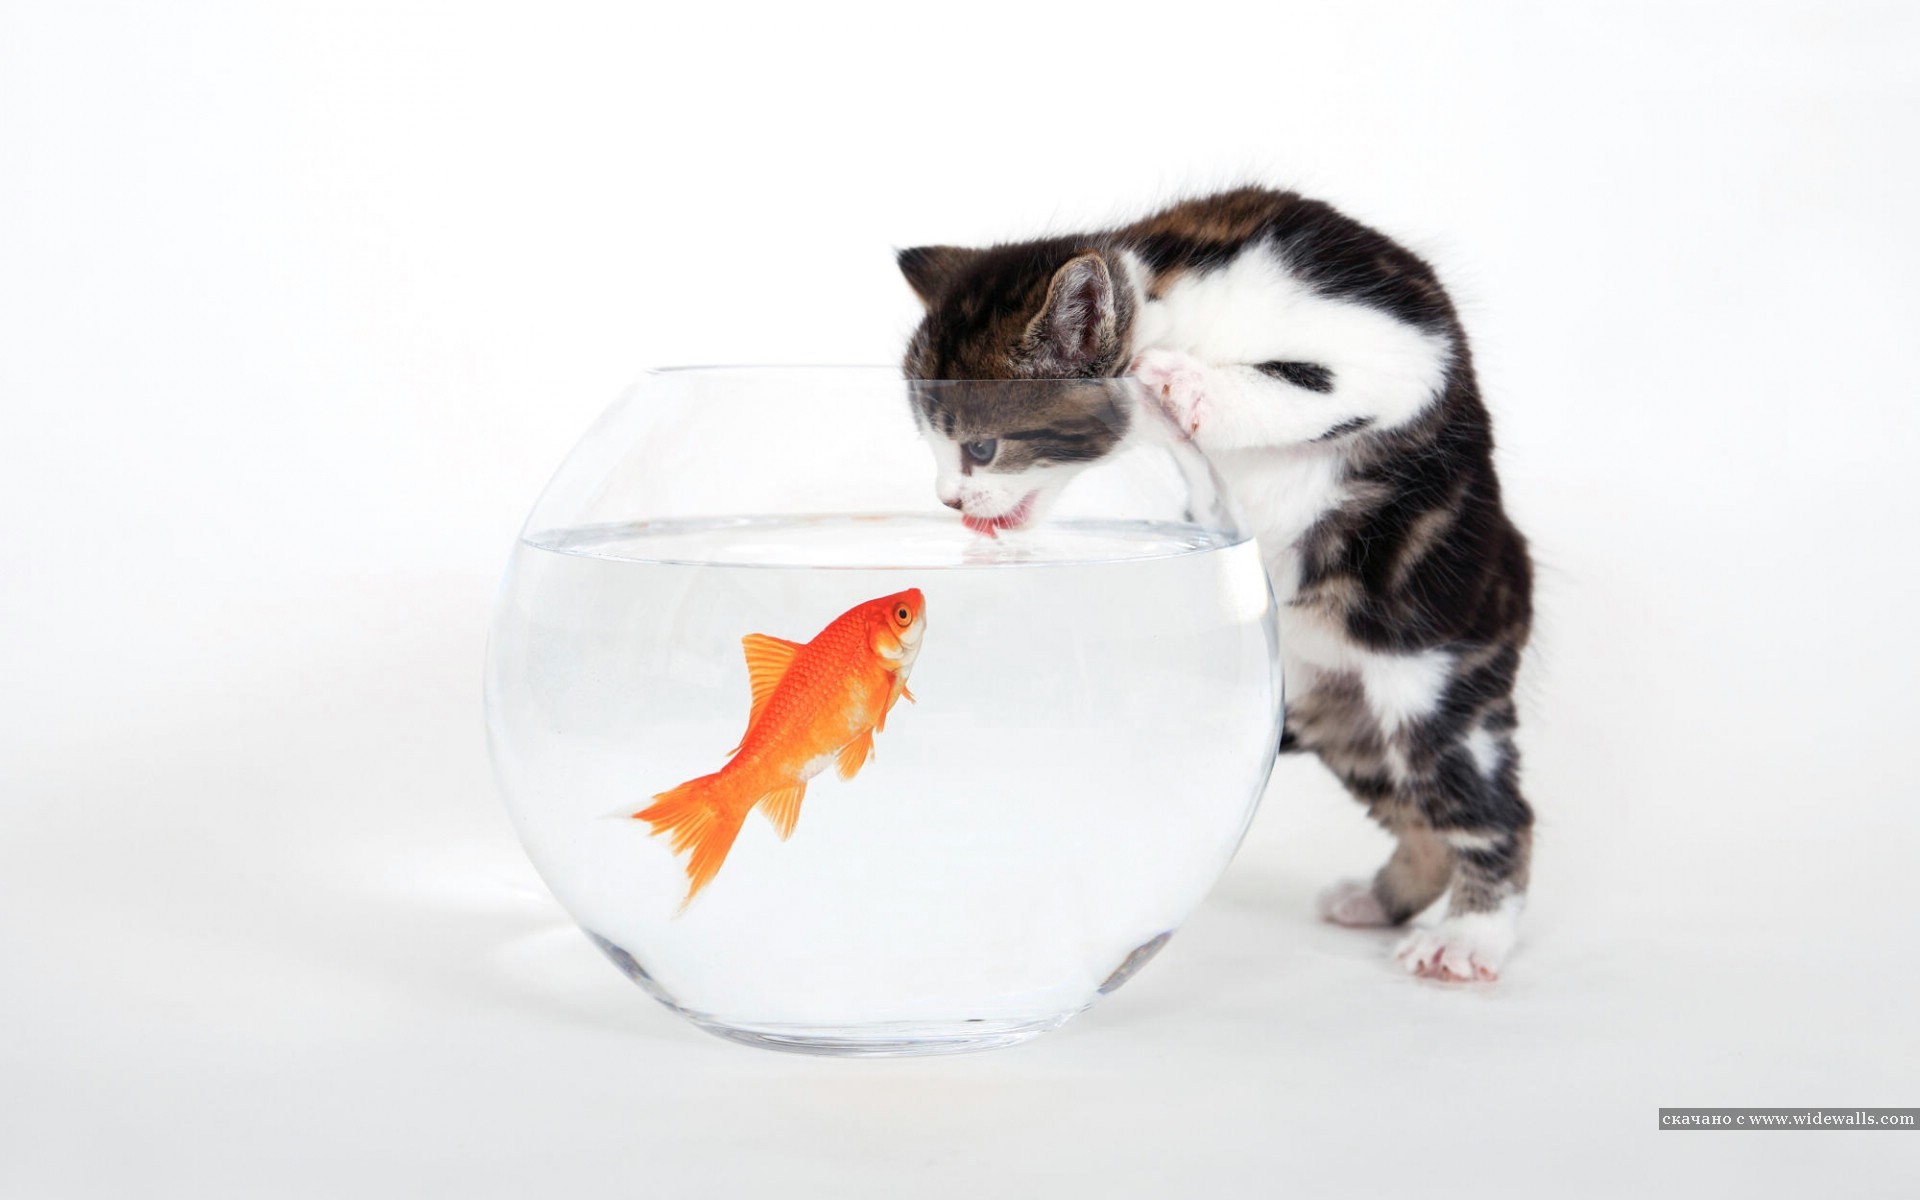 Скачать обои бесплатно Животные, Рыбы, Кошки (Коты Котики), Юмор картинка на рабочий стол ПК